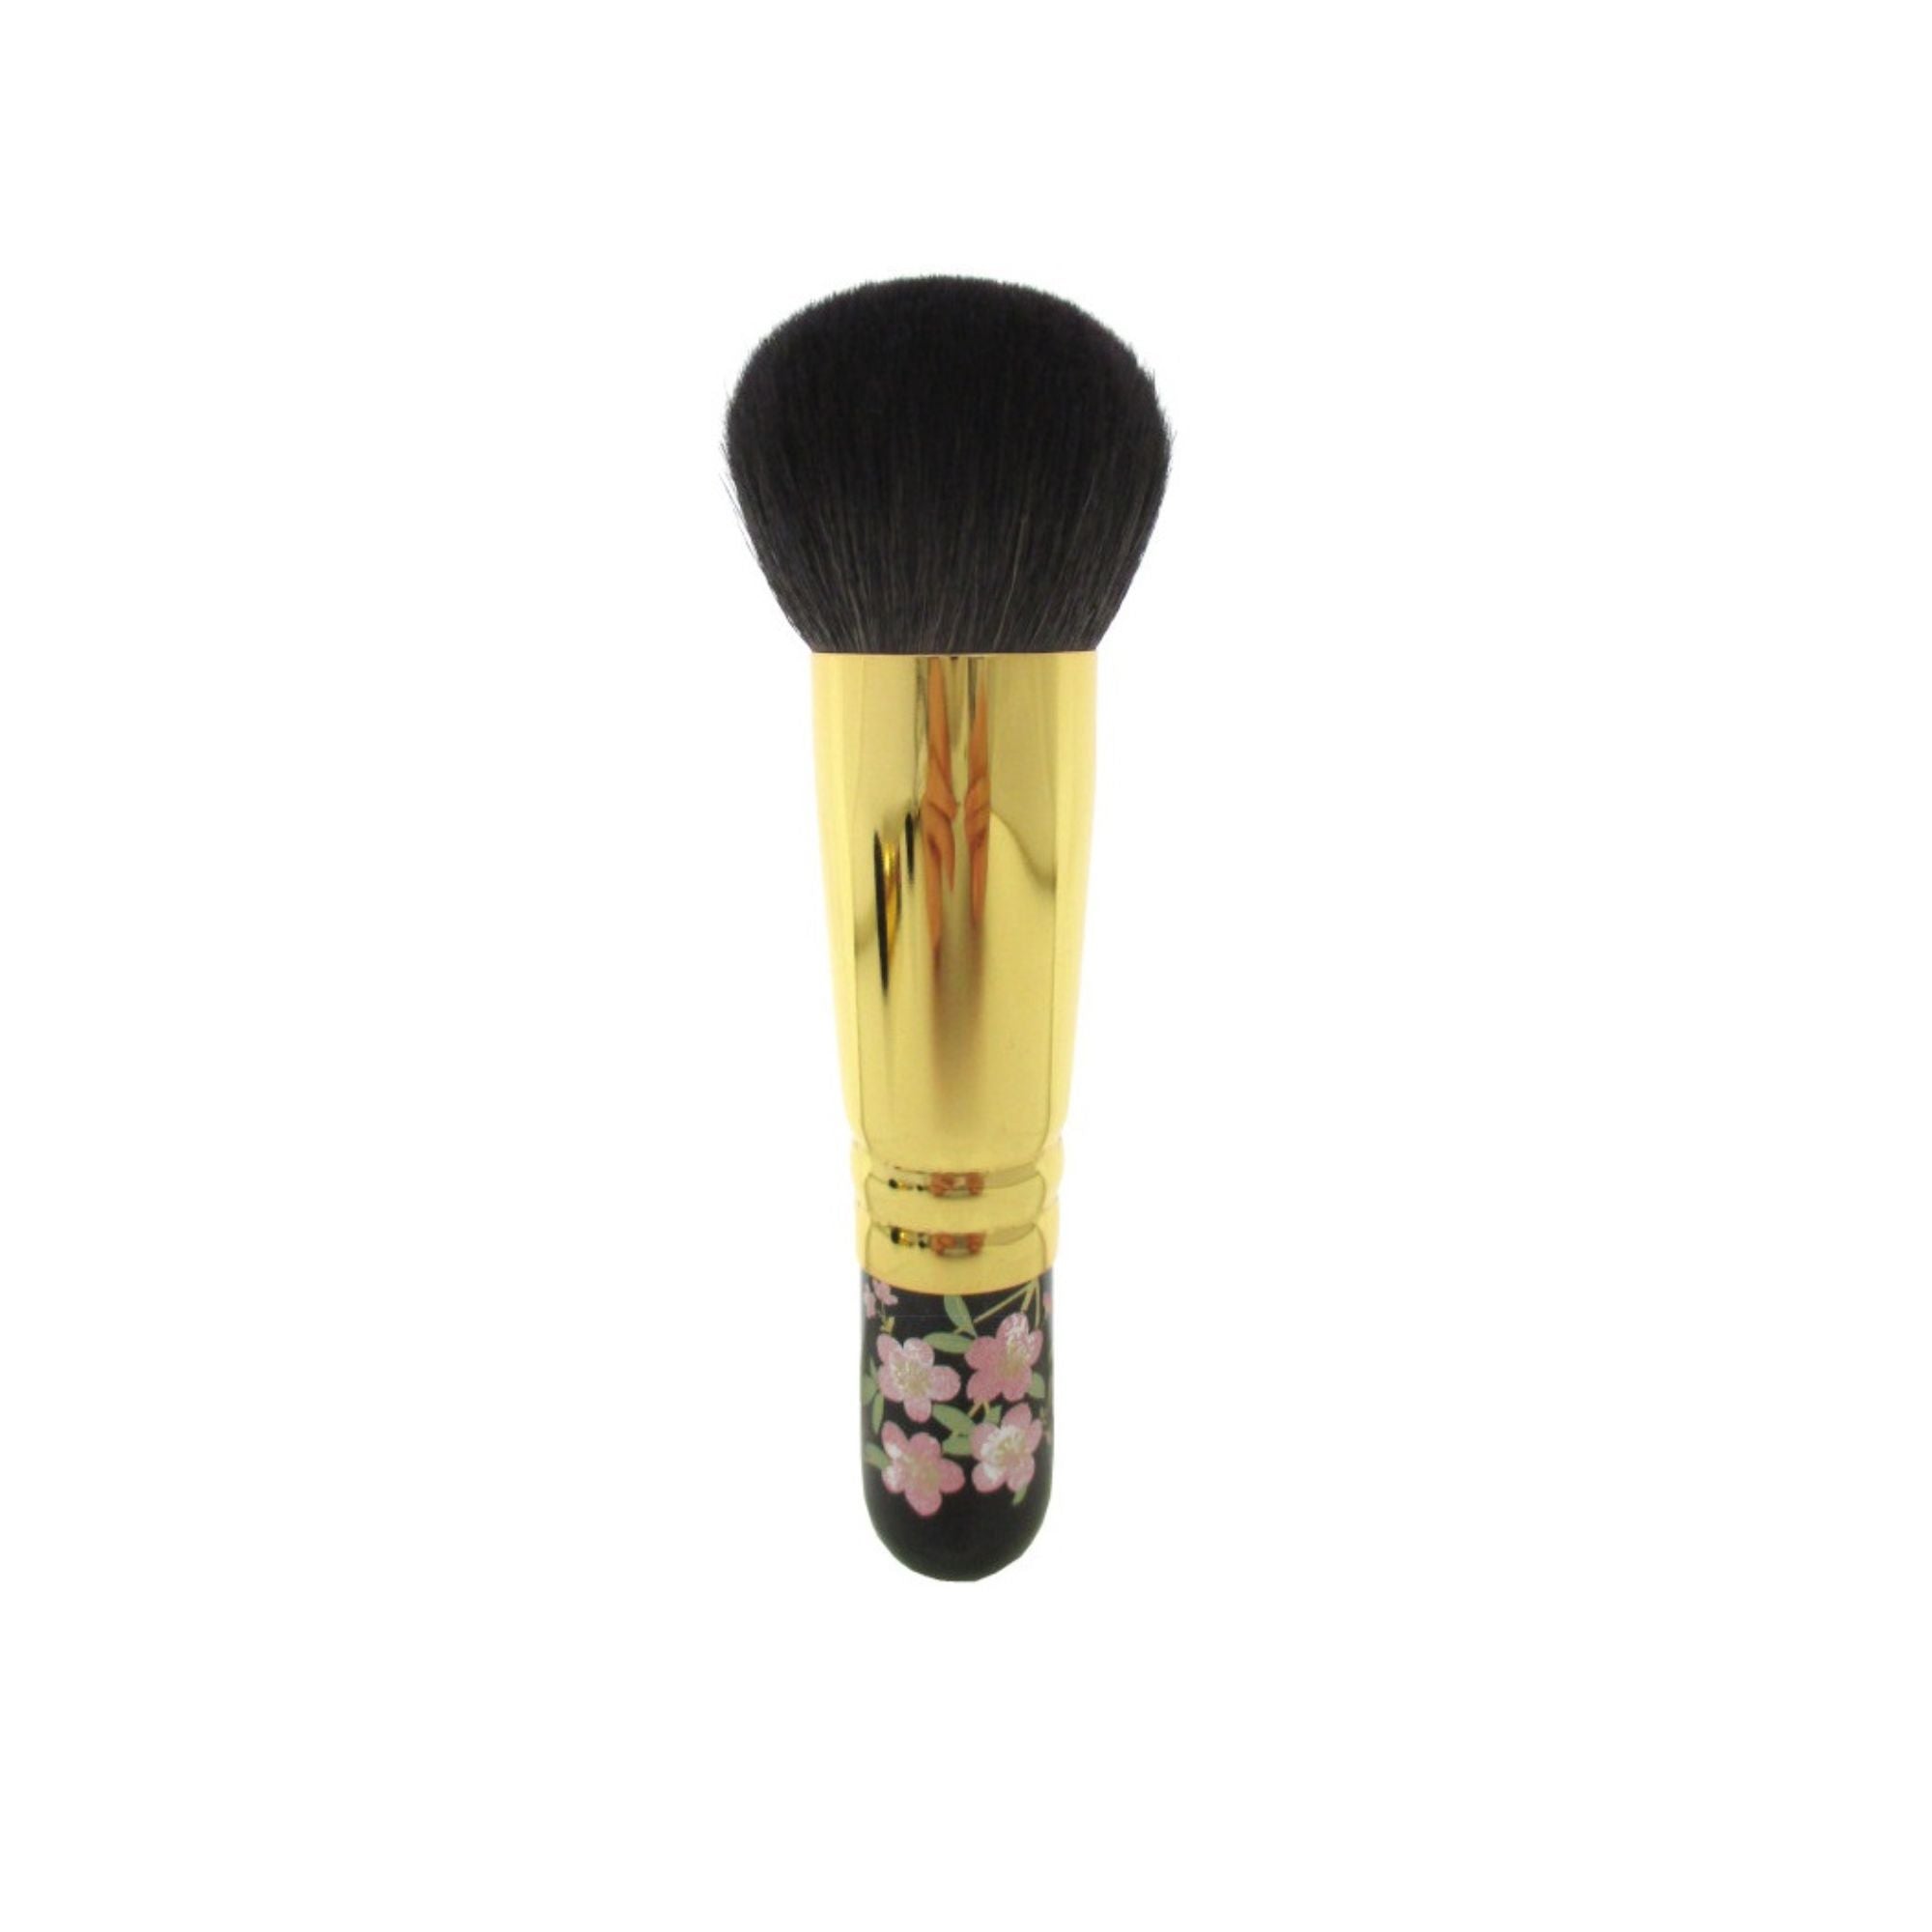 Eihodo WP PC-1 Puff Brush, Sakura Makie Designs - Fude Beauty, Japanese Makeup Brushes